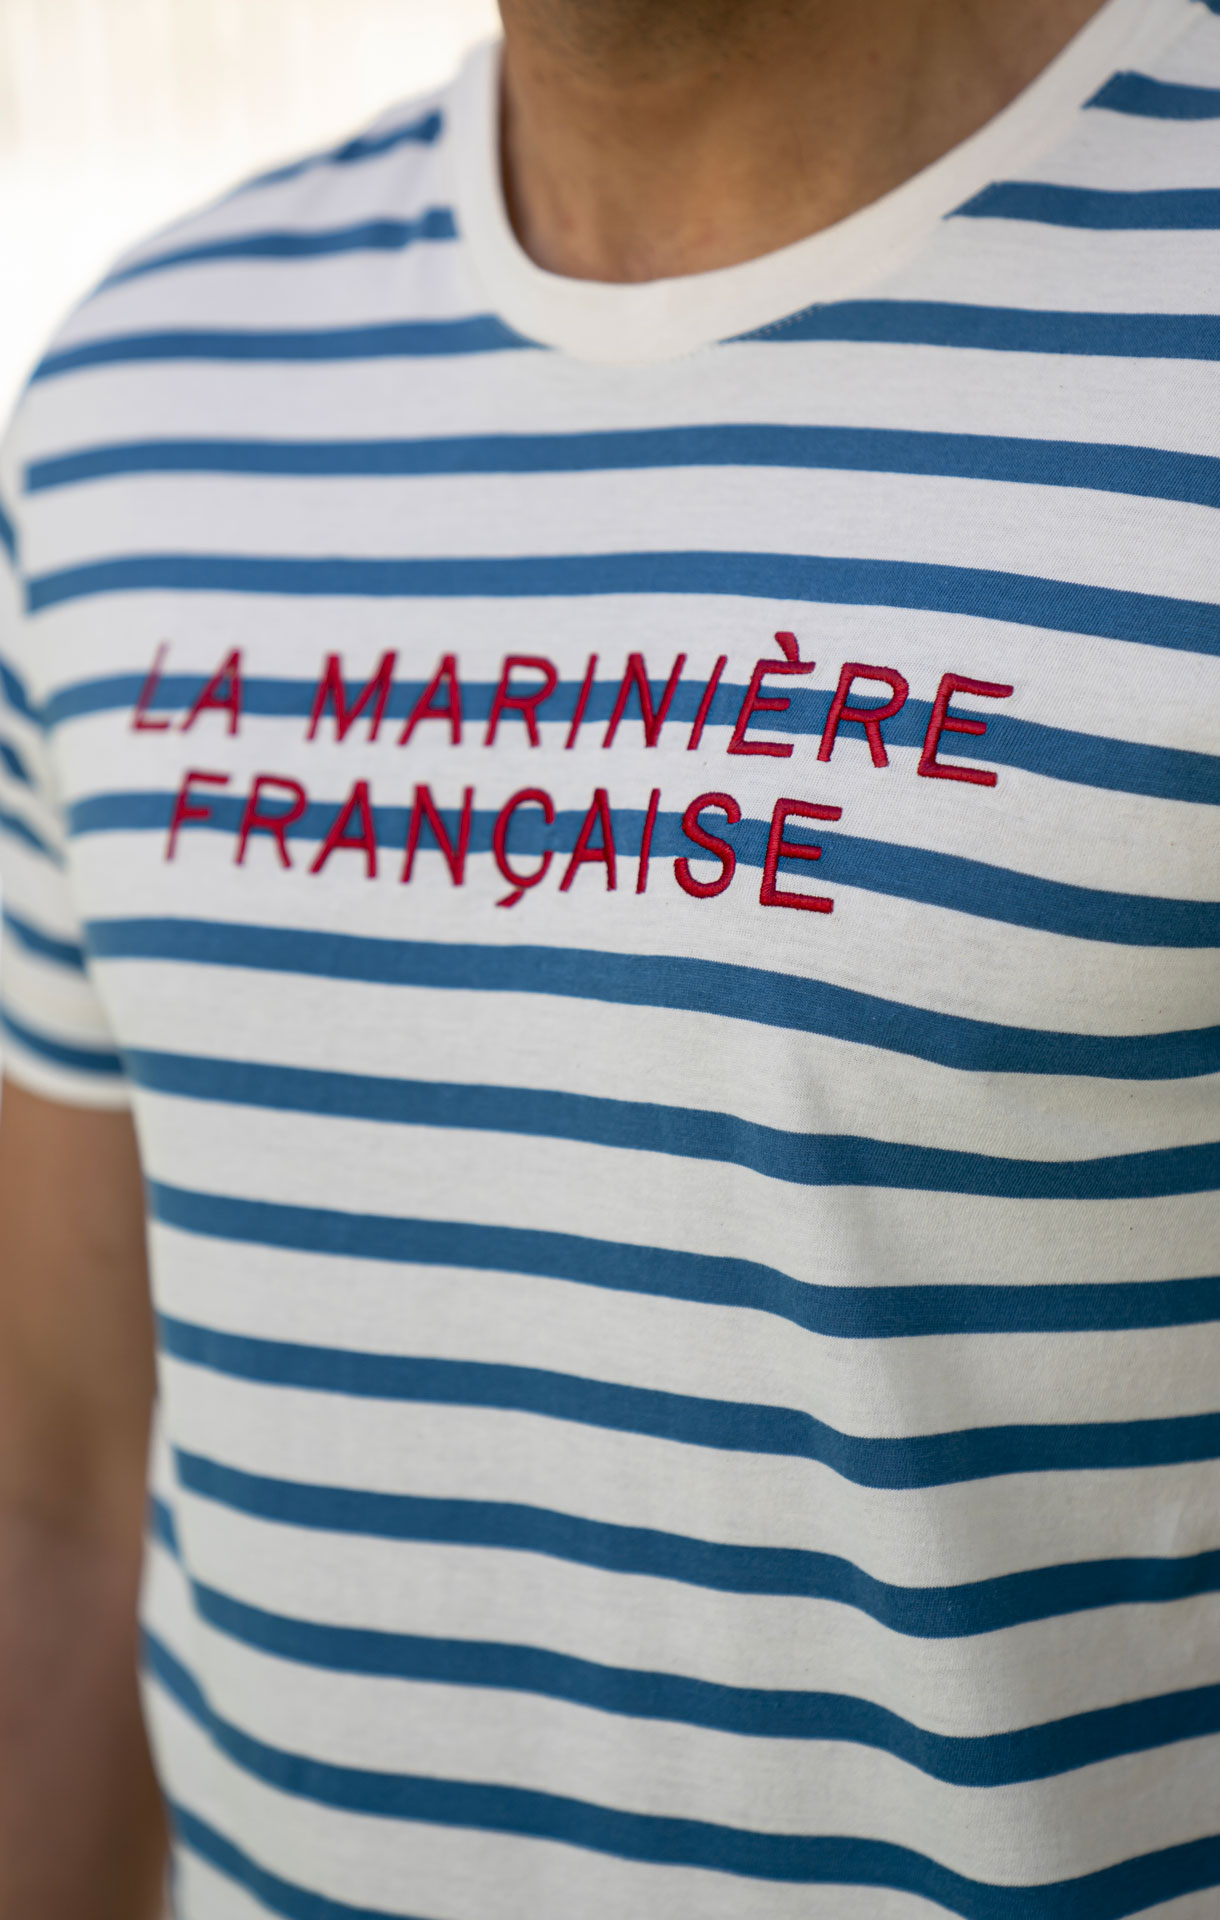 Polo manches longues homme ROGER MARINE – La Marinière Française